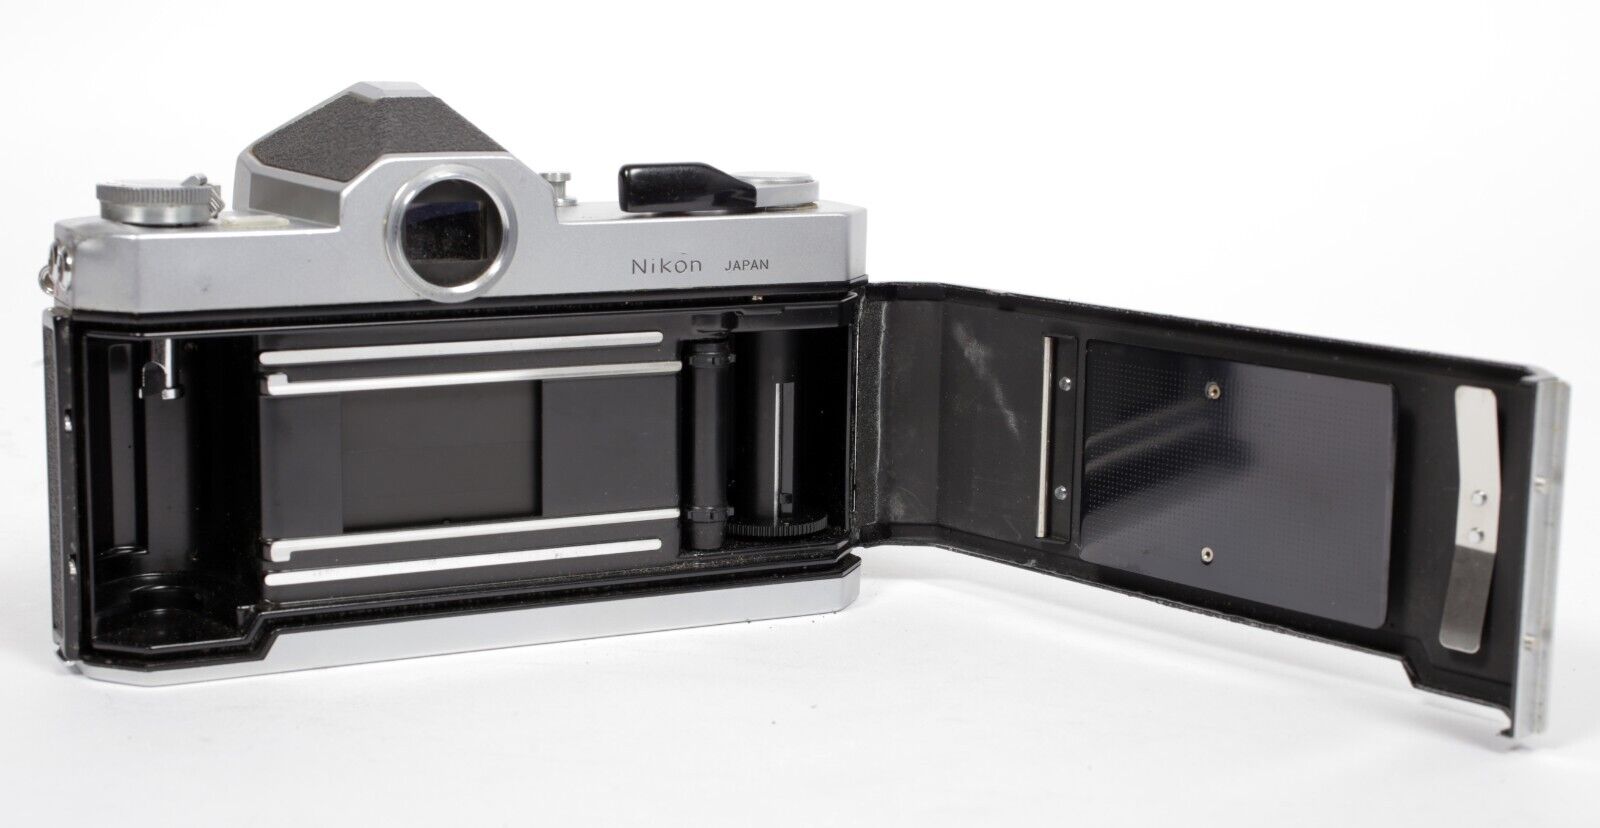 Nikon Nikkormat FTn 35mm SLR film camera with Nikkor H 50mm F12 lens #711 |  CatLABS